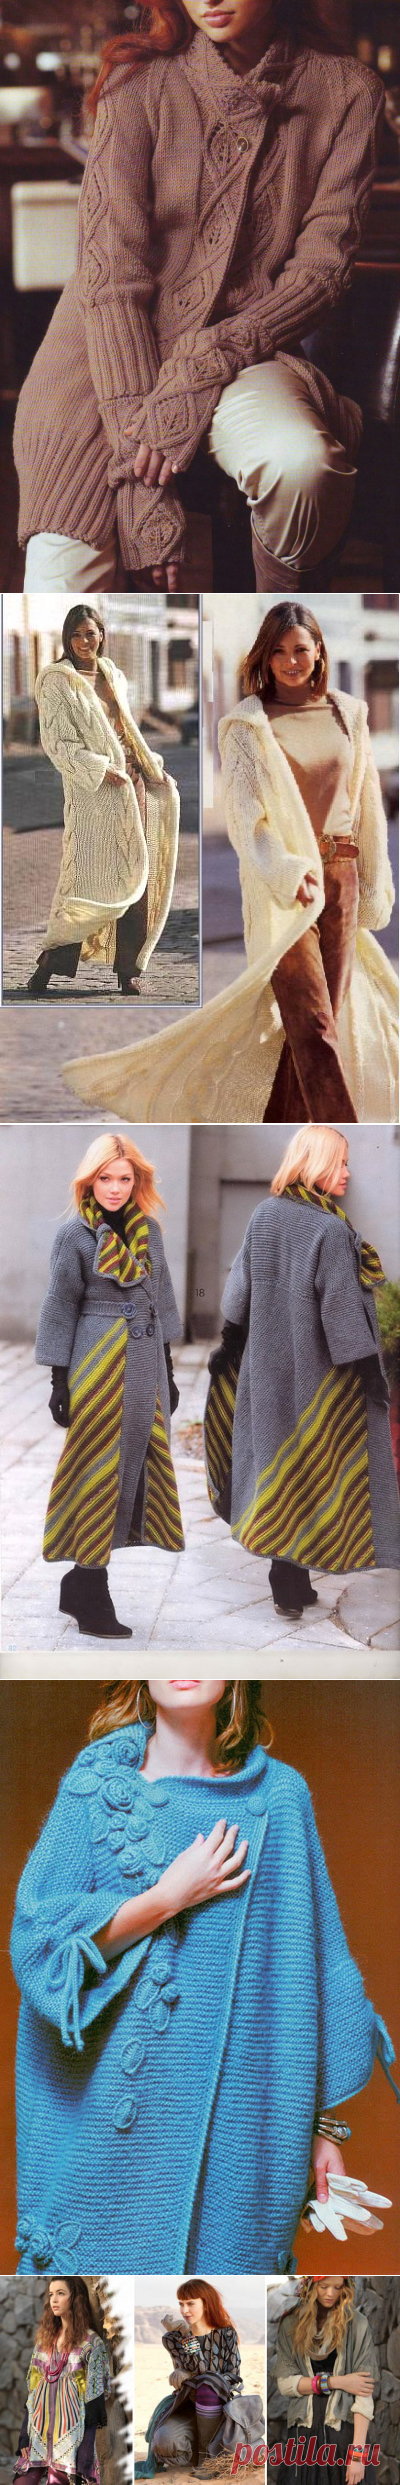 Вязание в Бохо стиле. Вязаное спицами пальто, кардиган, юбка на полных женщин в стиле Бохо своими руками